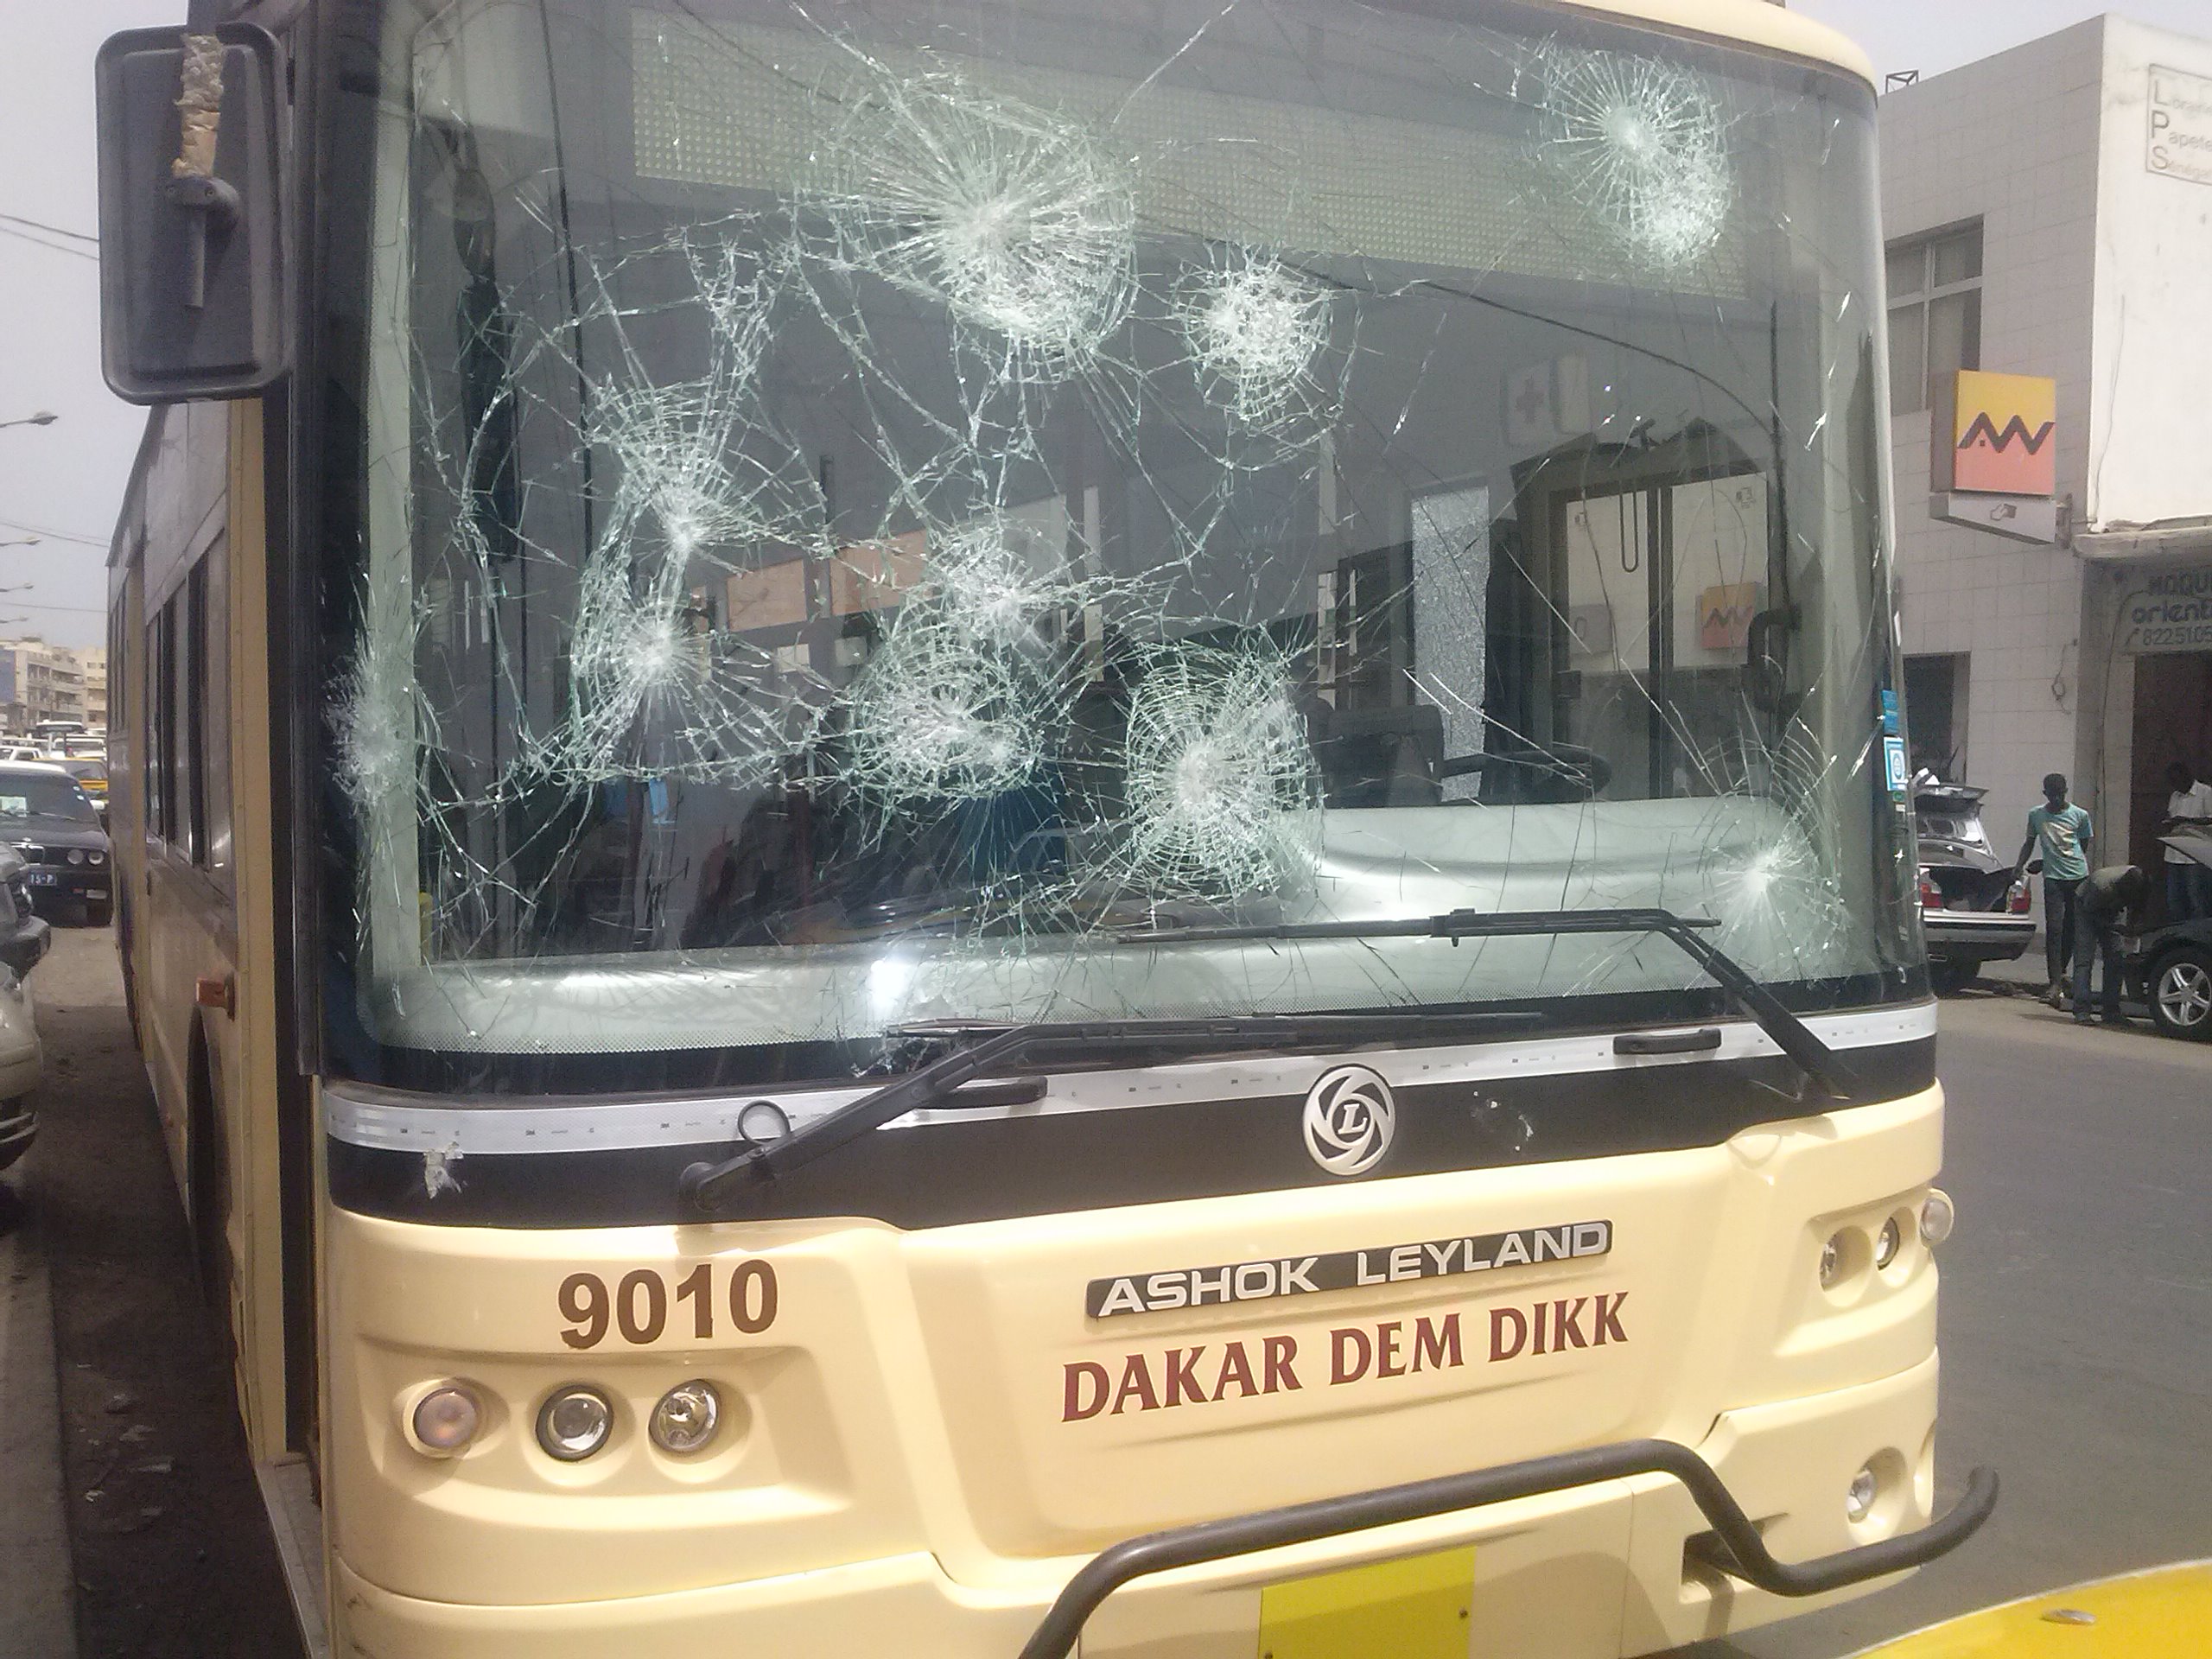 Déguerpissement des marchands aux abords du Rond-point Colobane : 2 bus de Dakar Dem Dikk saccagés